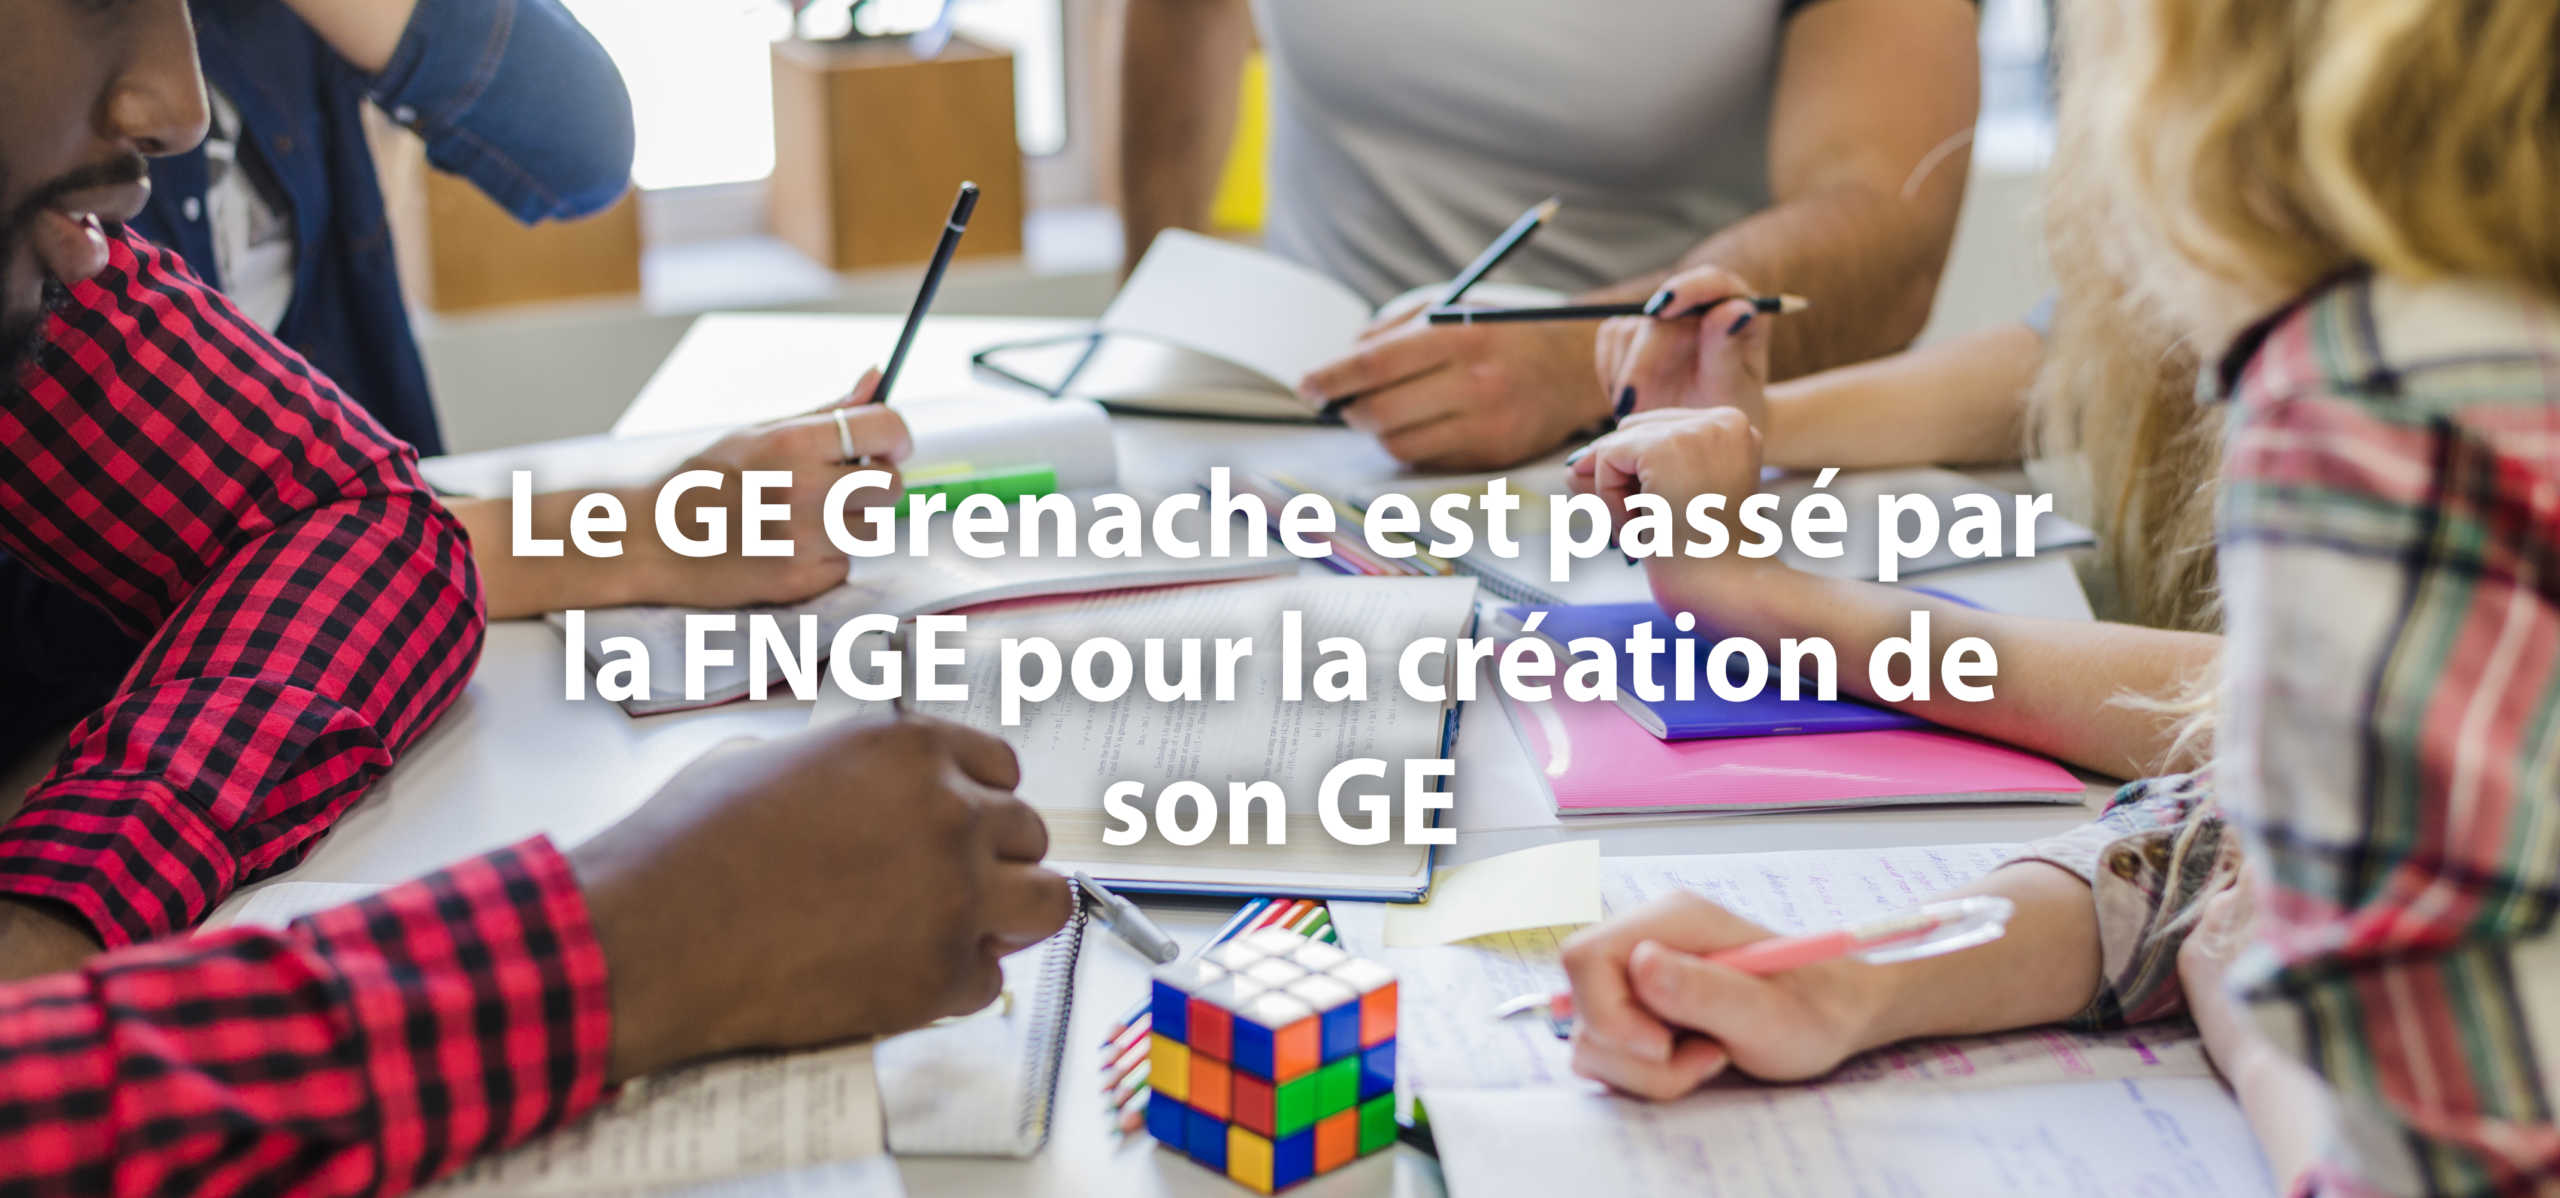 Le GE Grenache est passé par la FNGE pour la création de son GE